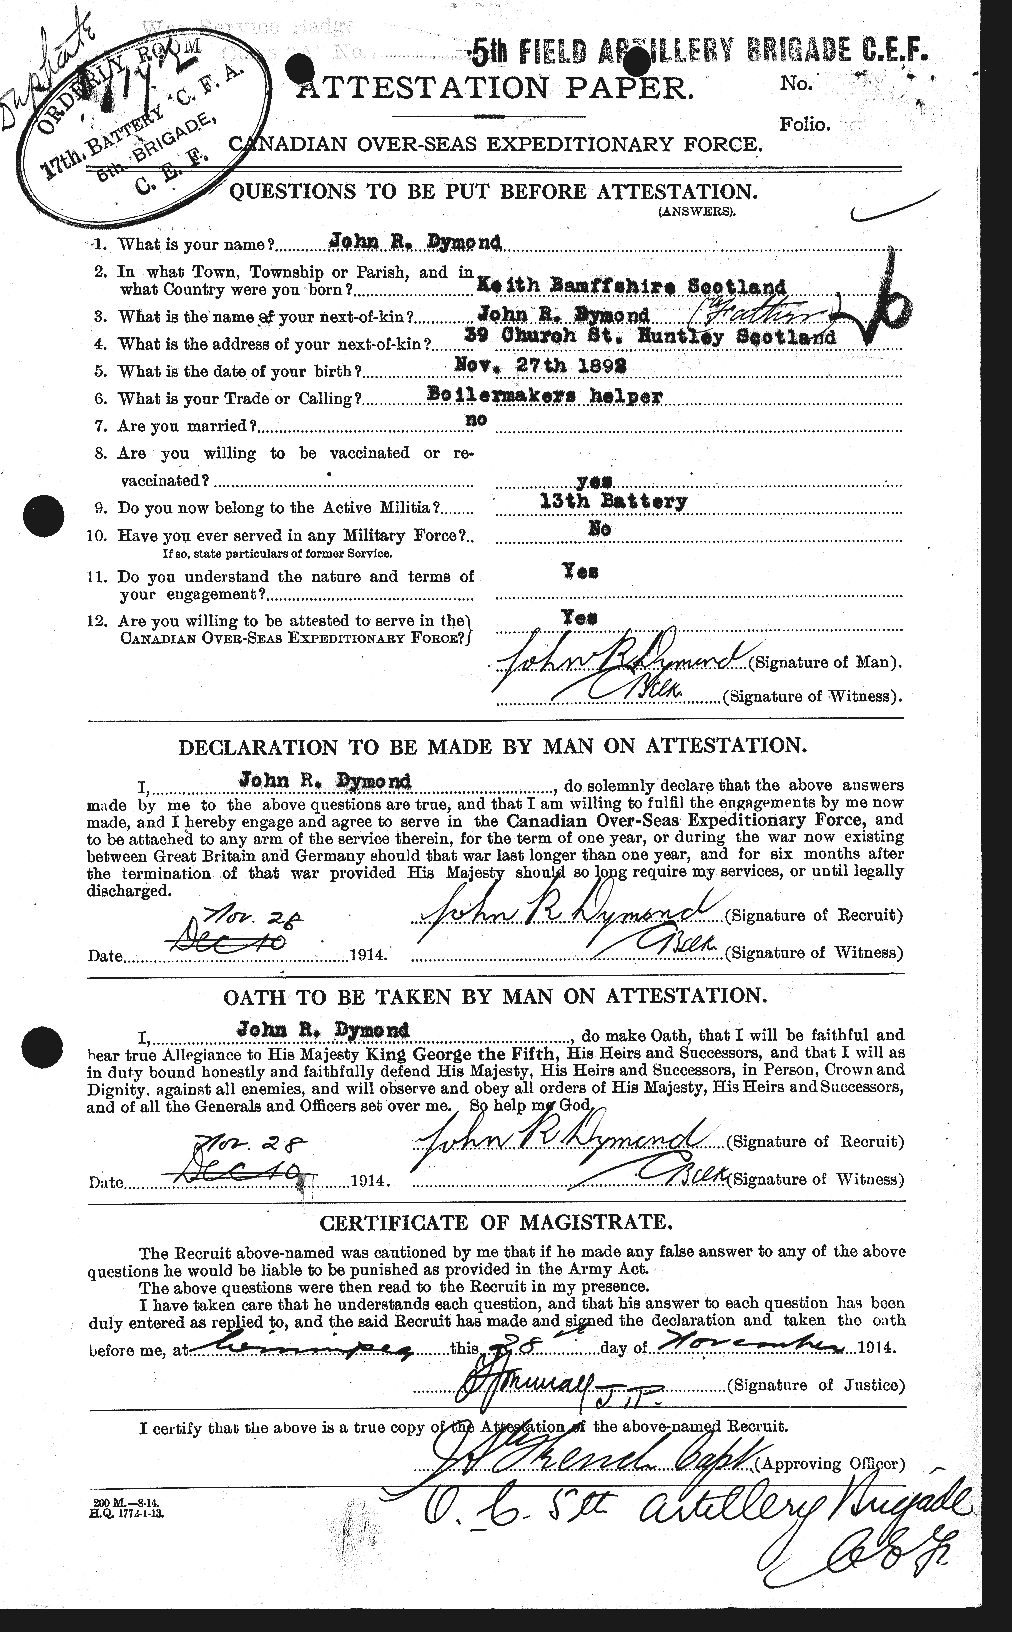 Dossiers du Personnel de la Première Guerre mondiale - CEC 307321a